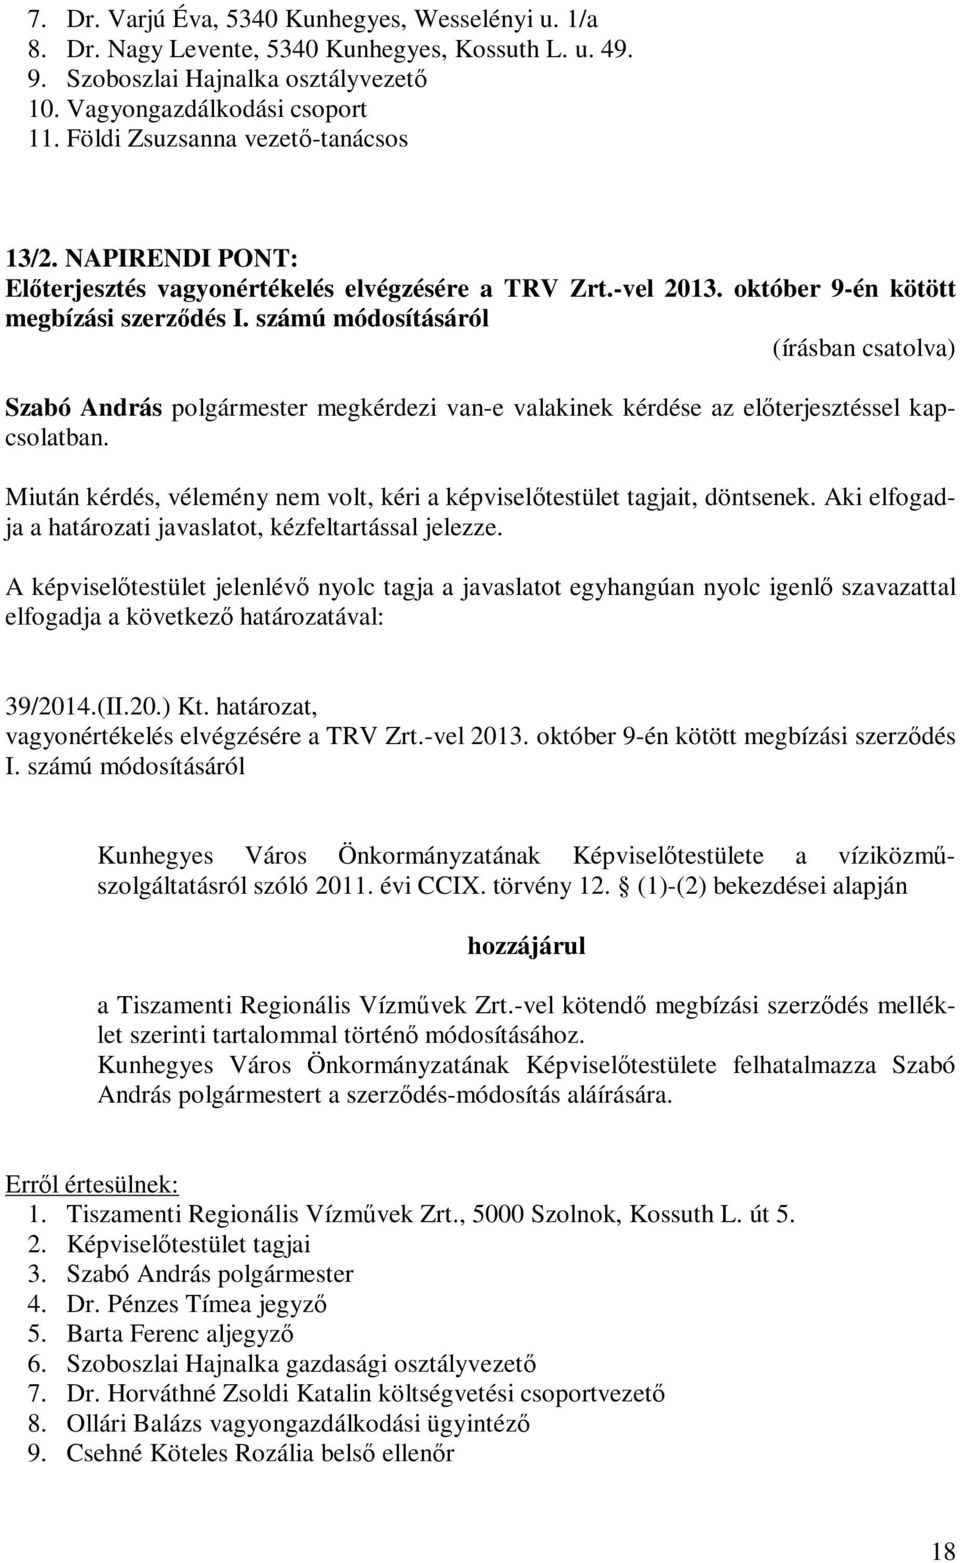 számú módosításáról Szabó András polgármester megkérdezi van-e valakinek kérdése az előterjesztéssel kapcsolatban. 39/2014.(II.20.) Kt. határozat, vagyonértékelés elvégzésére a TRV Zrt.-vel 2013.